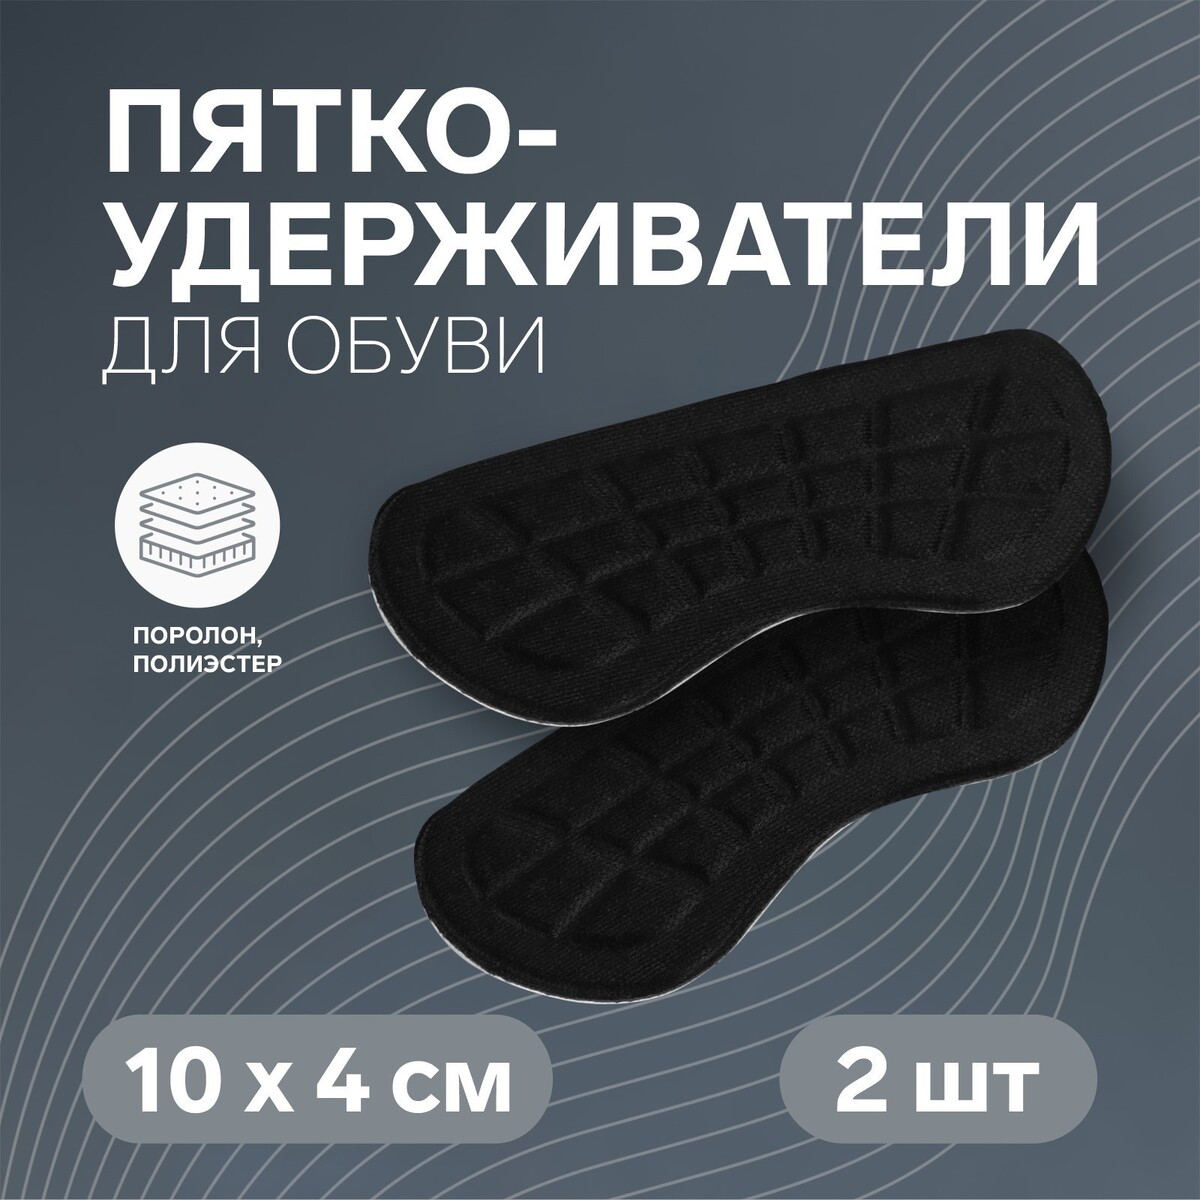 Пяткоудерживатели для обуви, на клеевой основе, 10 × 4 см, пара, цвет черный